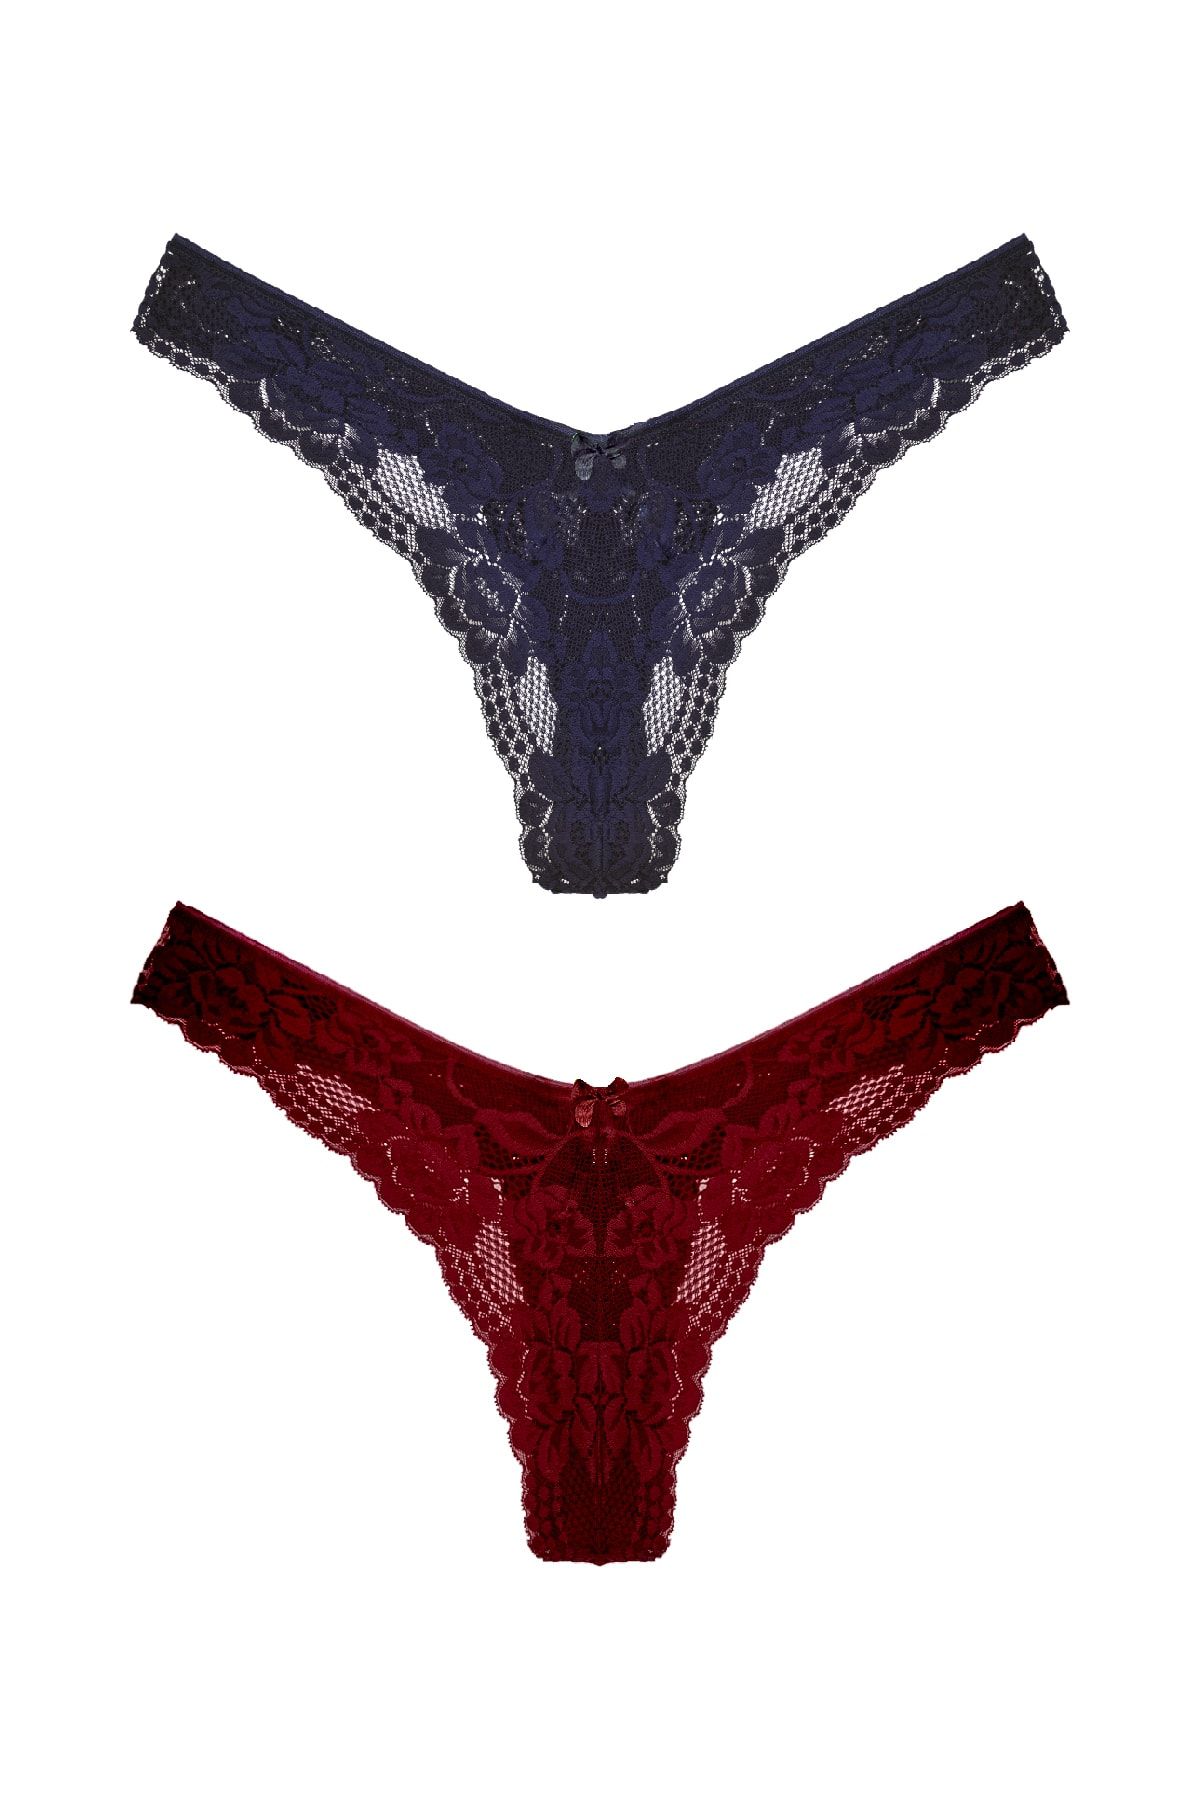 HNX 2-Piece Complete Lace High Waist Brazil Women's Thong Panties